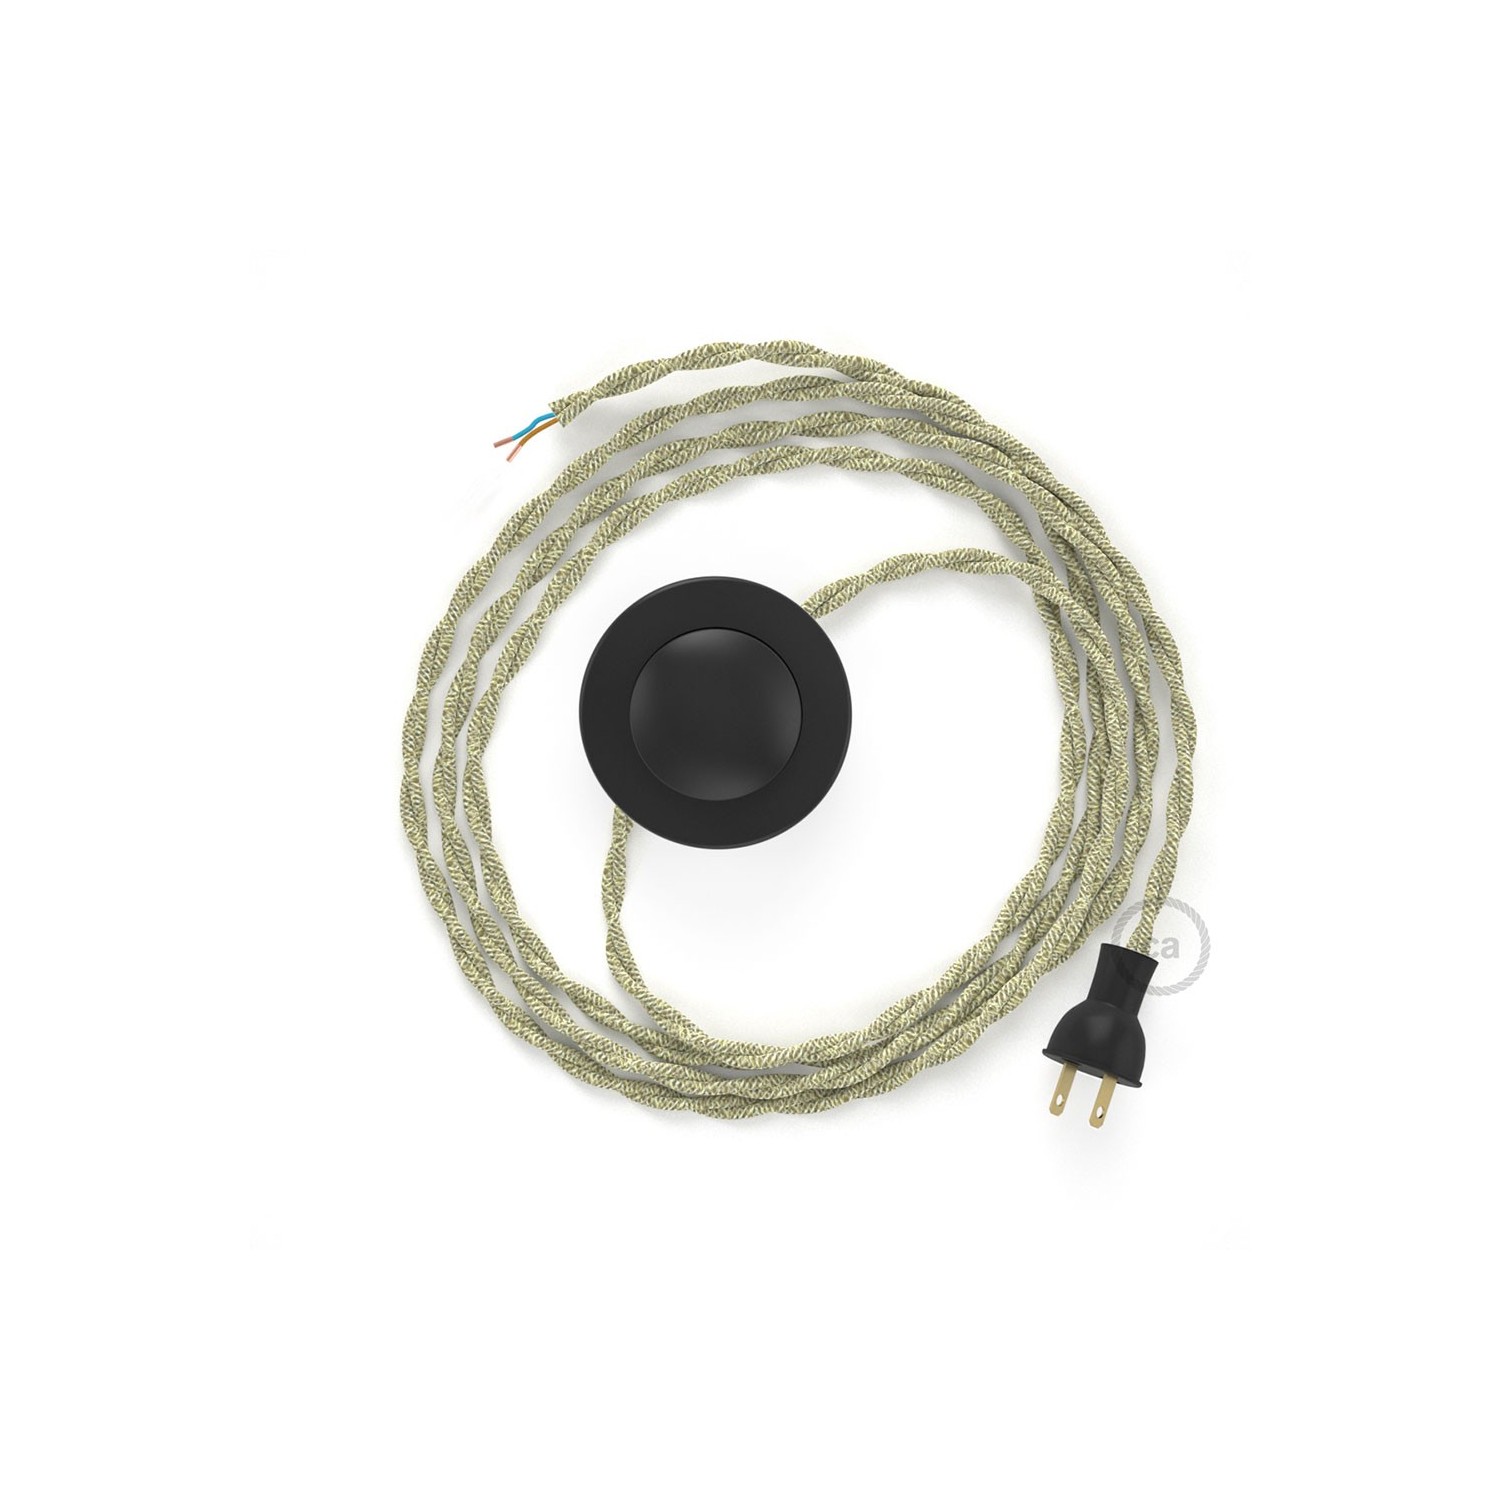 Cableado para lámpara de piso, cable TN01 Lino Natural Neutro 3 m. Elige tu el color de la clavija y del interruptor!